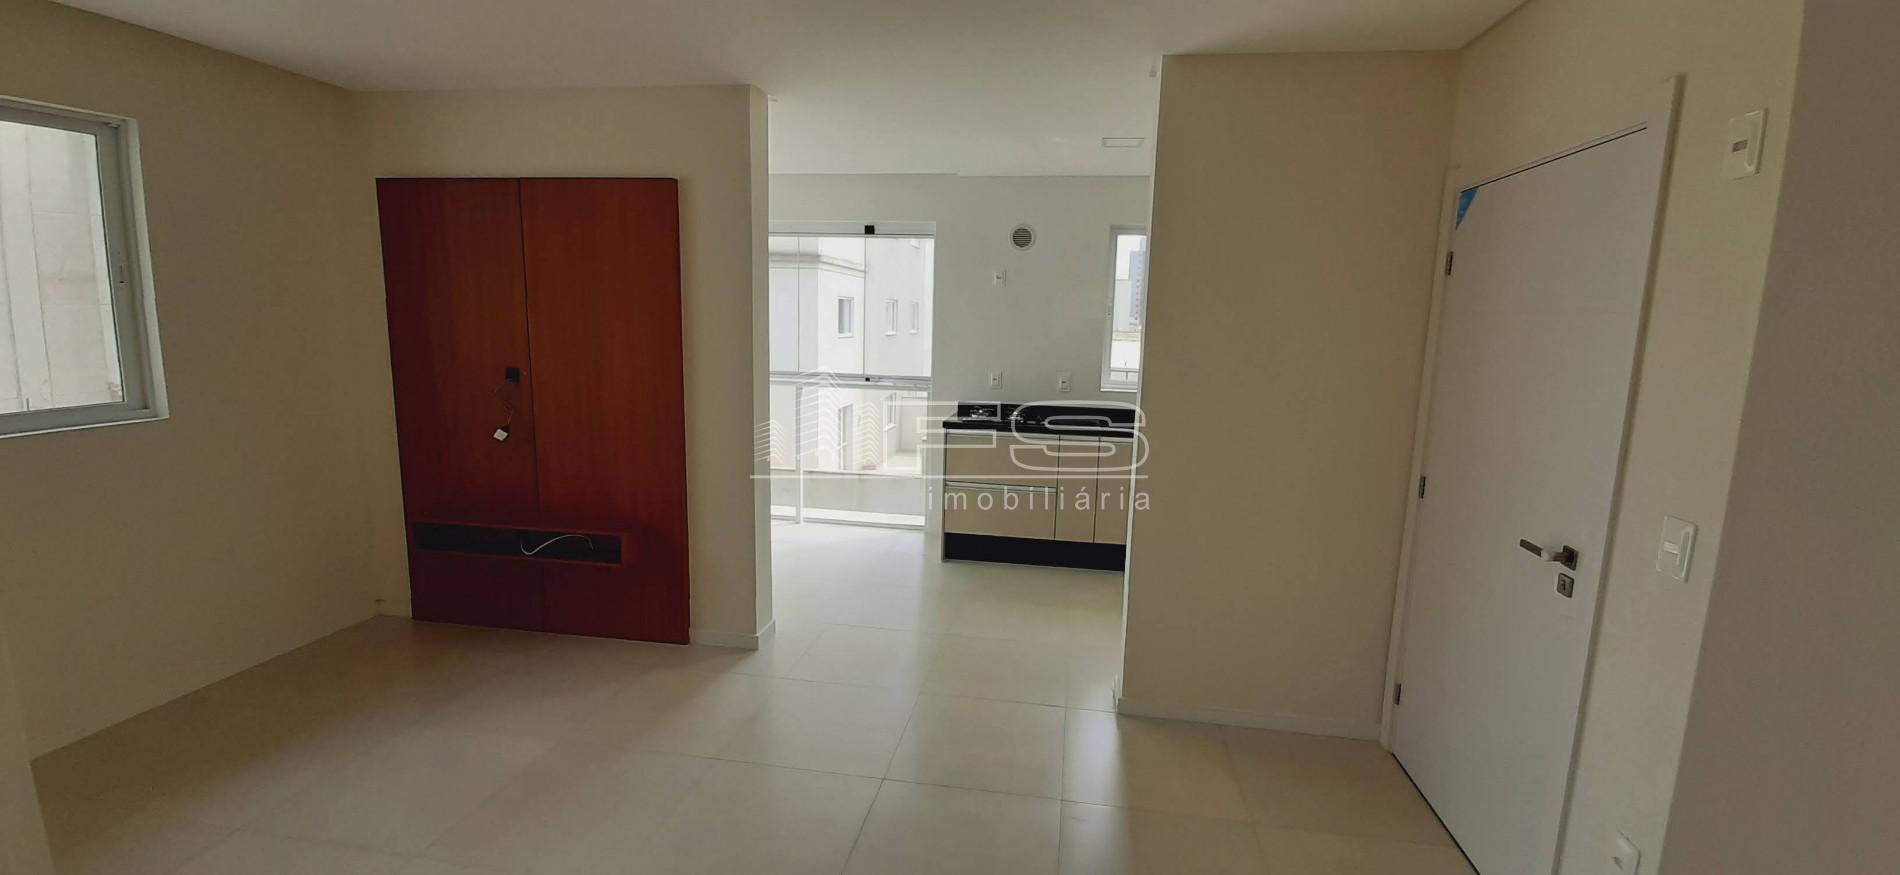 Apartamento com 2 Dormitórios à venda, 68 m² por R$ 740.000,00